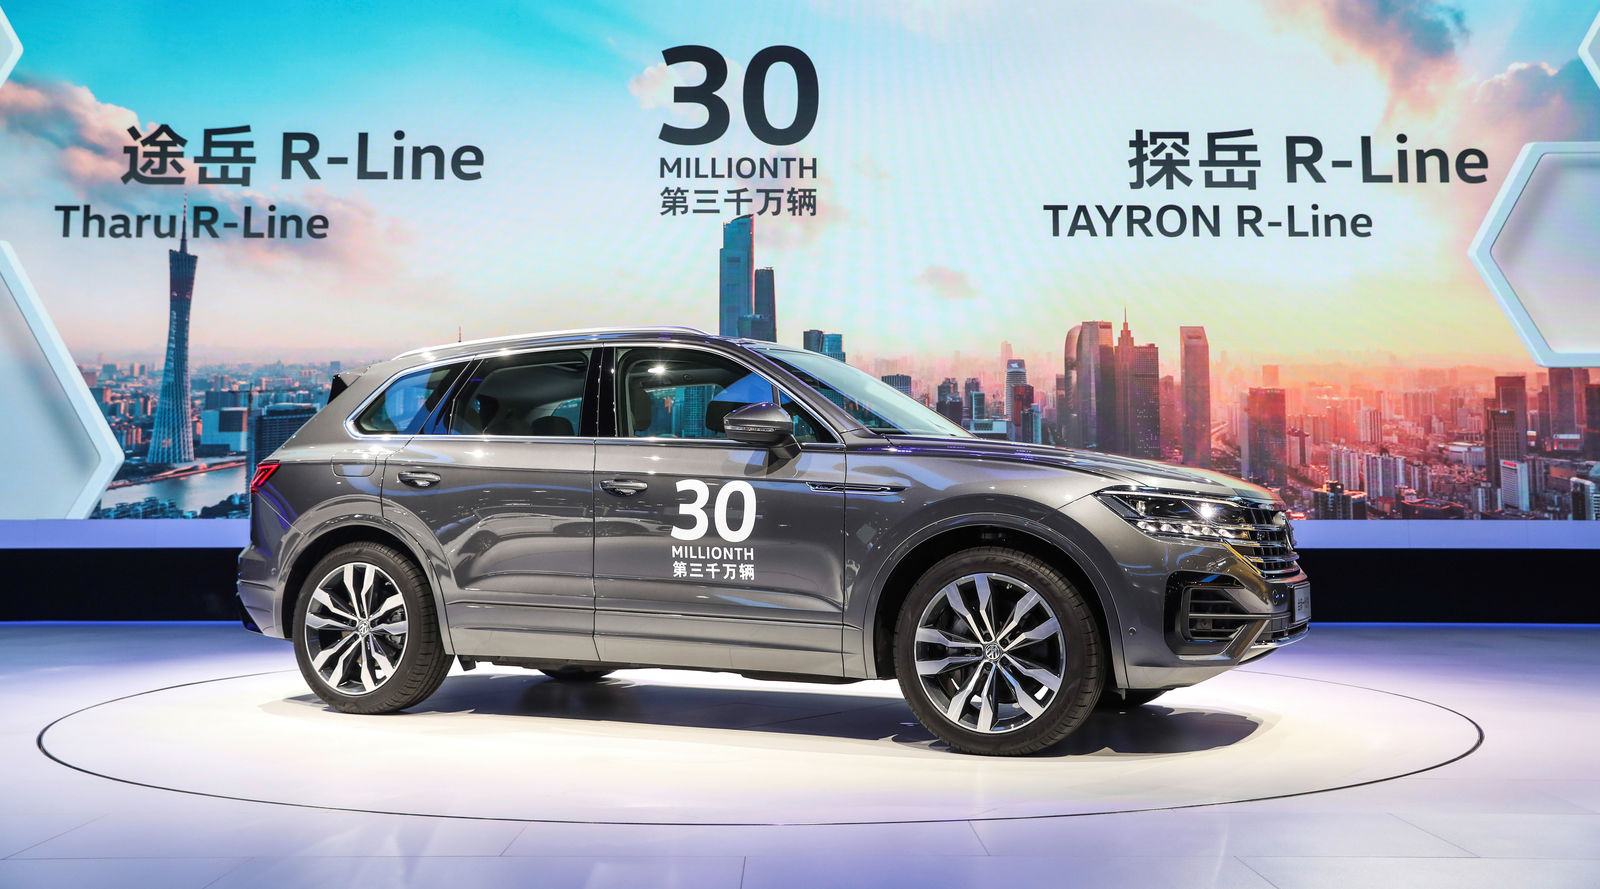 Die Marke Volkswagen hat in China 30 Millionen Fahrzeuge verkauft – das Jubiläumsmodell ist ein Touareg